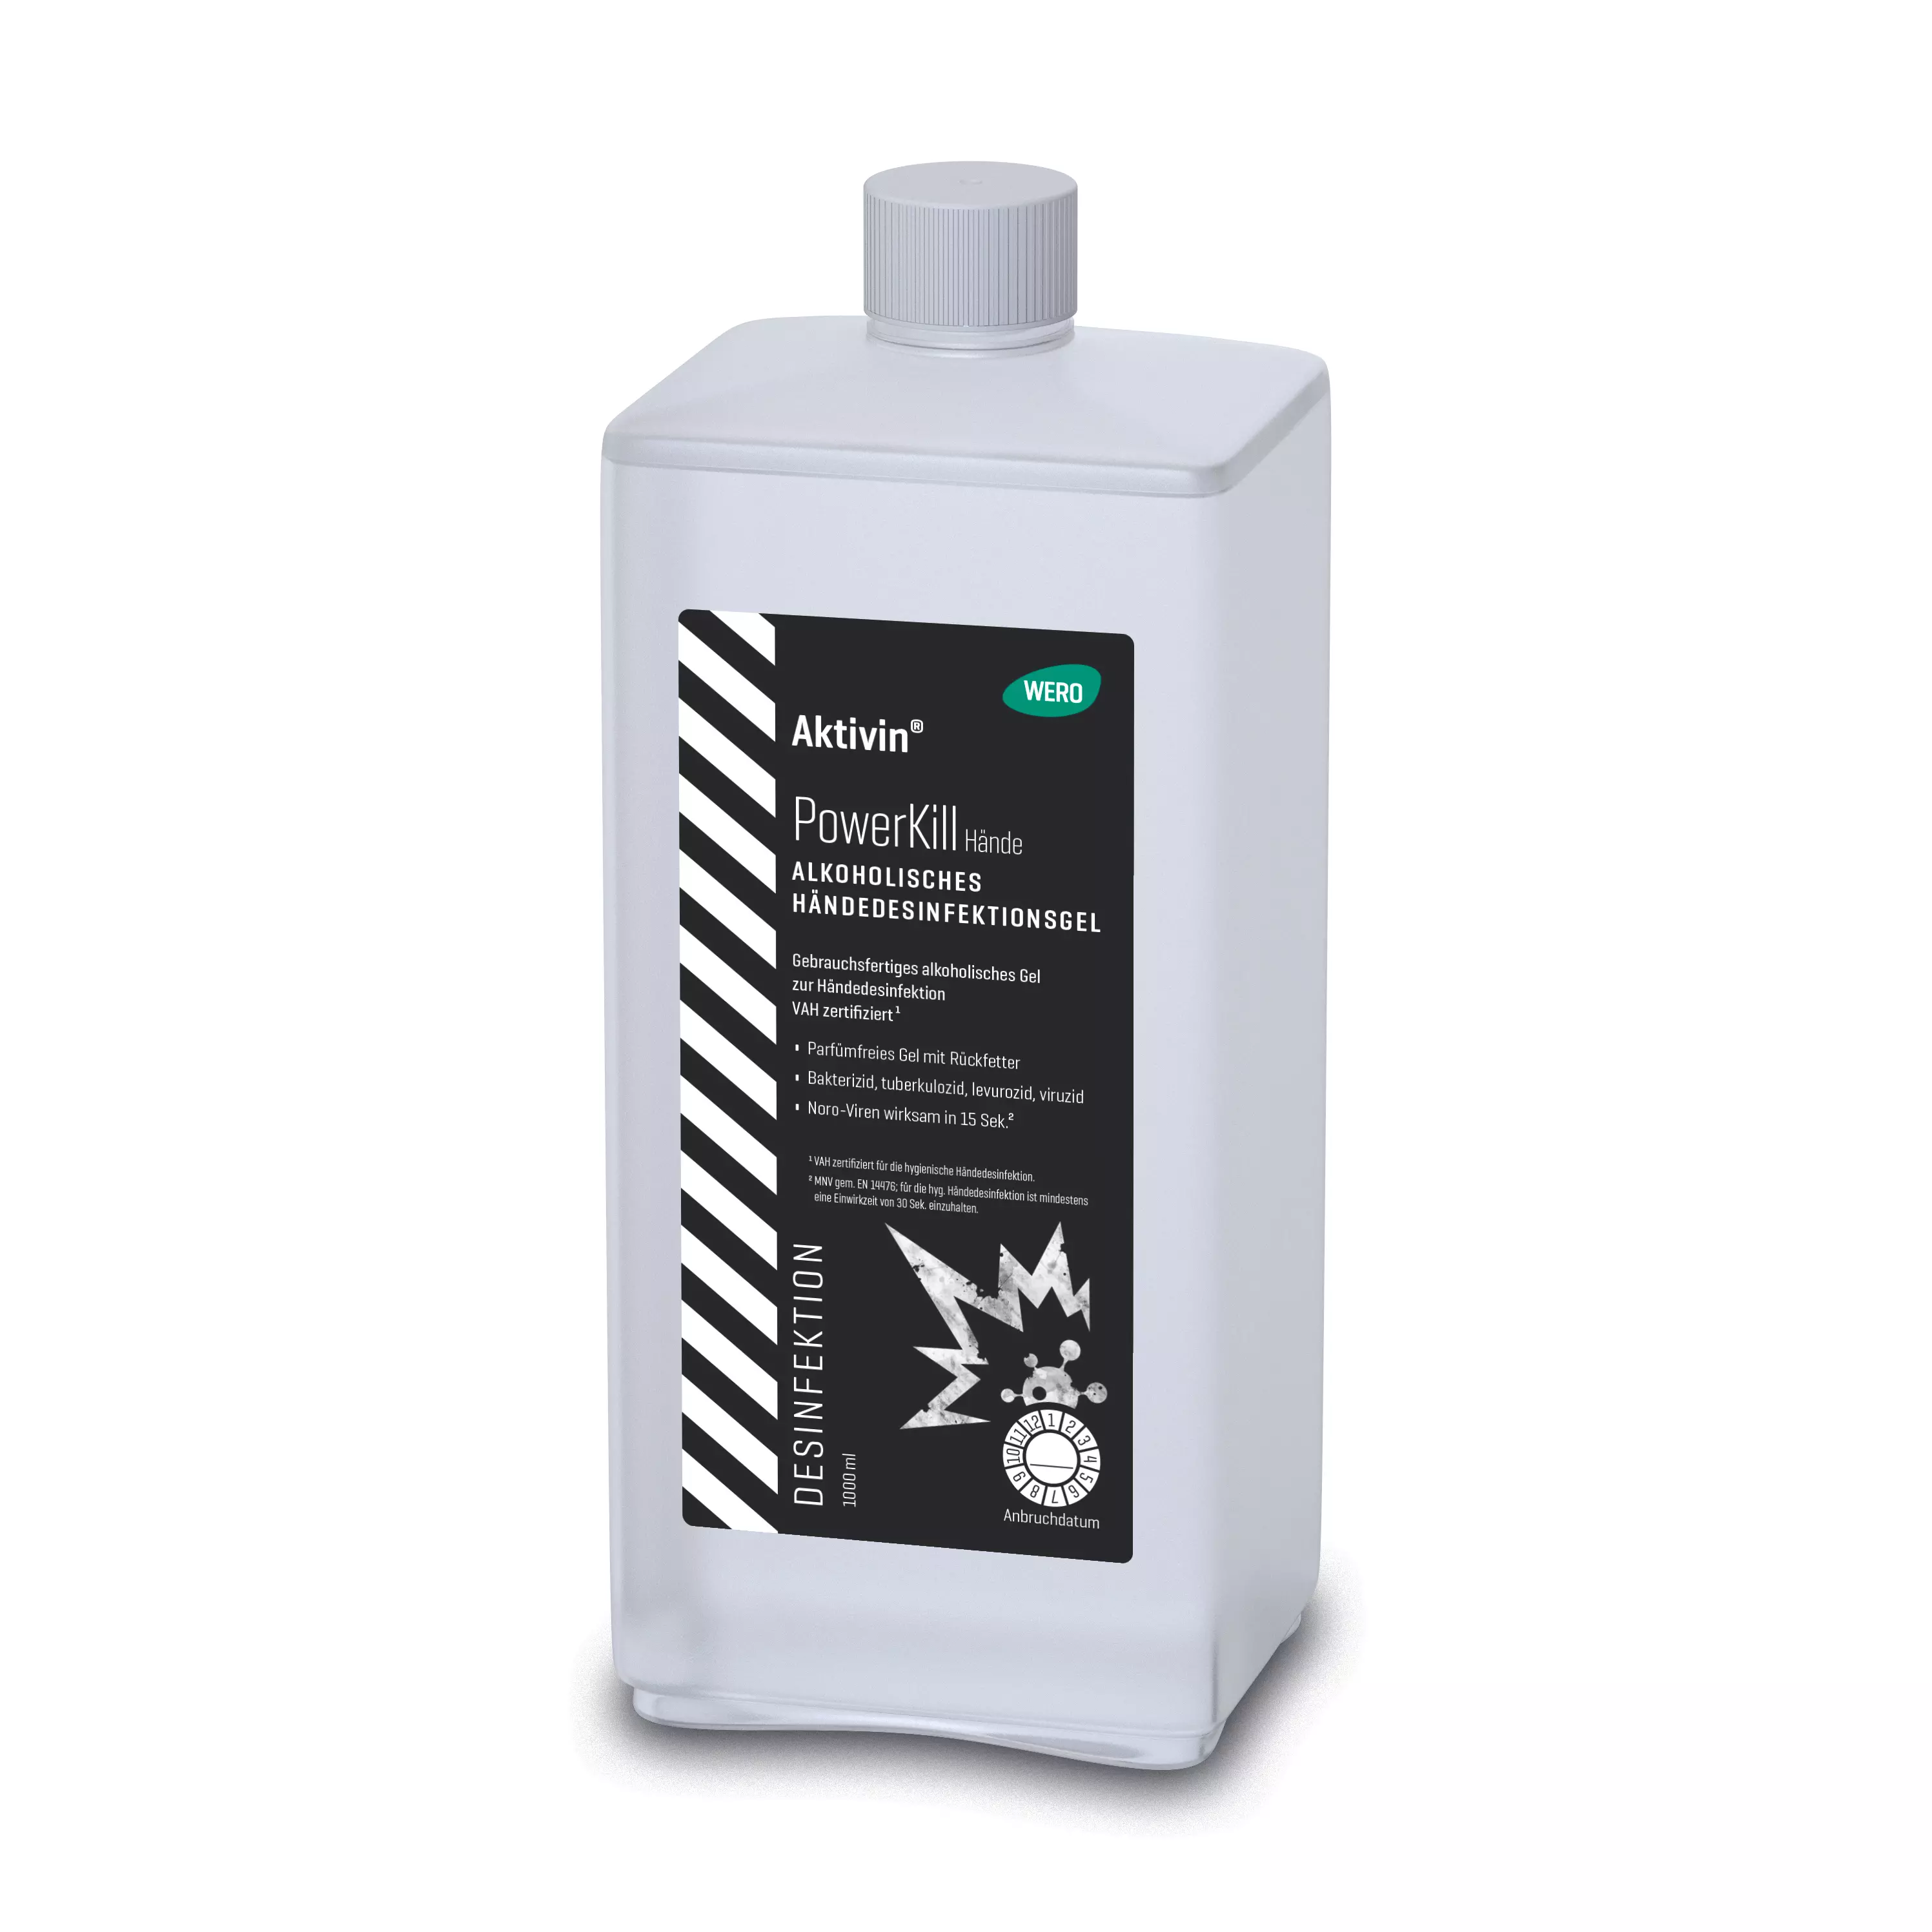 Hand disinfectant gel Aktivin® PowerKill - Euro bottle, 1,000 ml